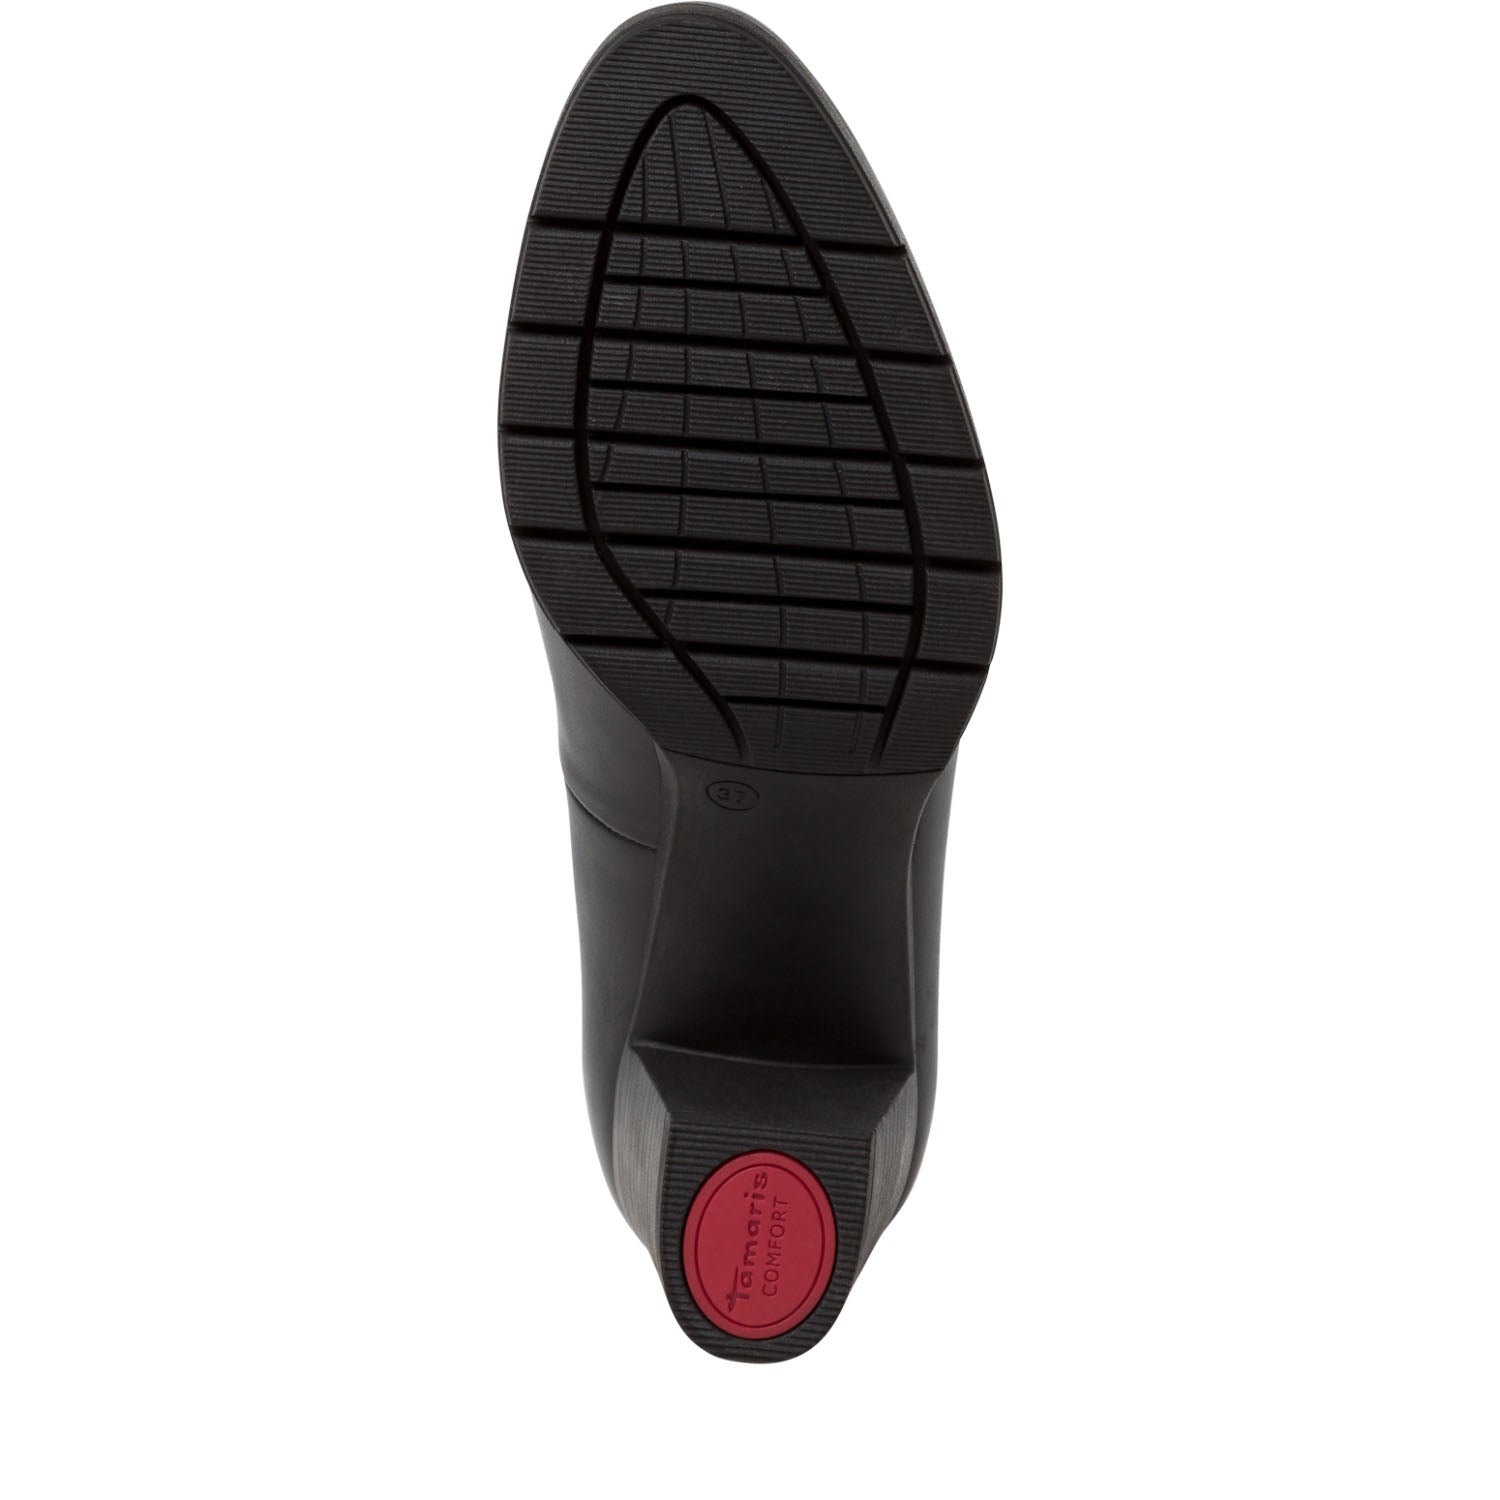 Sole of Tamaris Comfort's Block Heel Court Shoe.